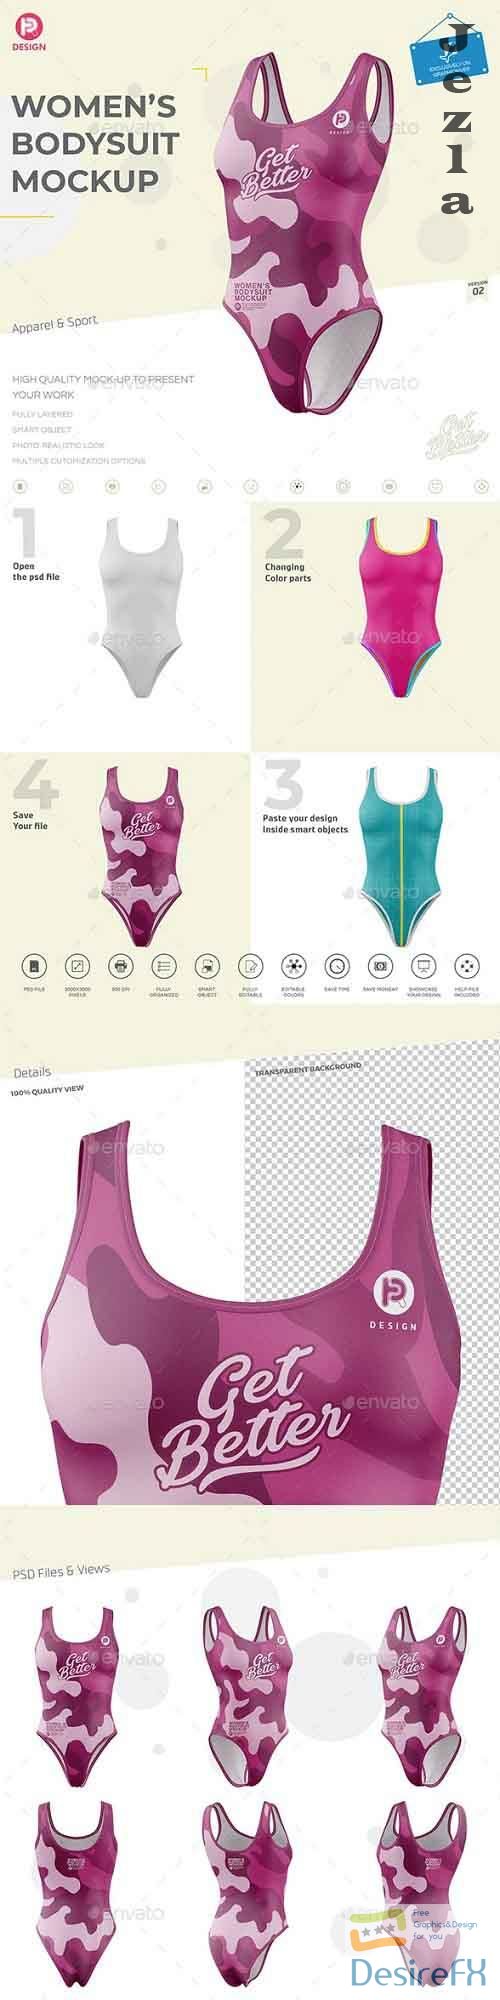 Women's Bodysuit Mockup V2 26697053